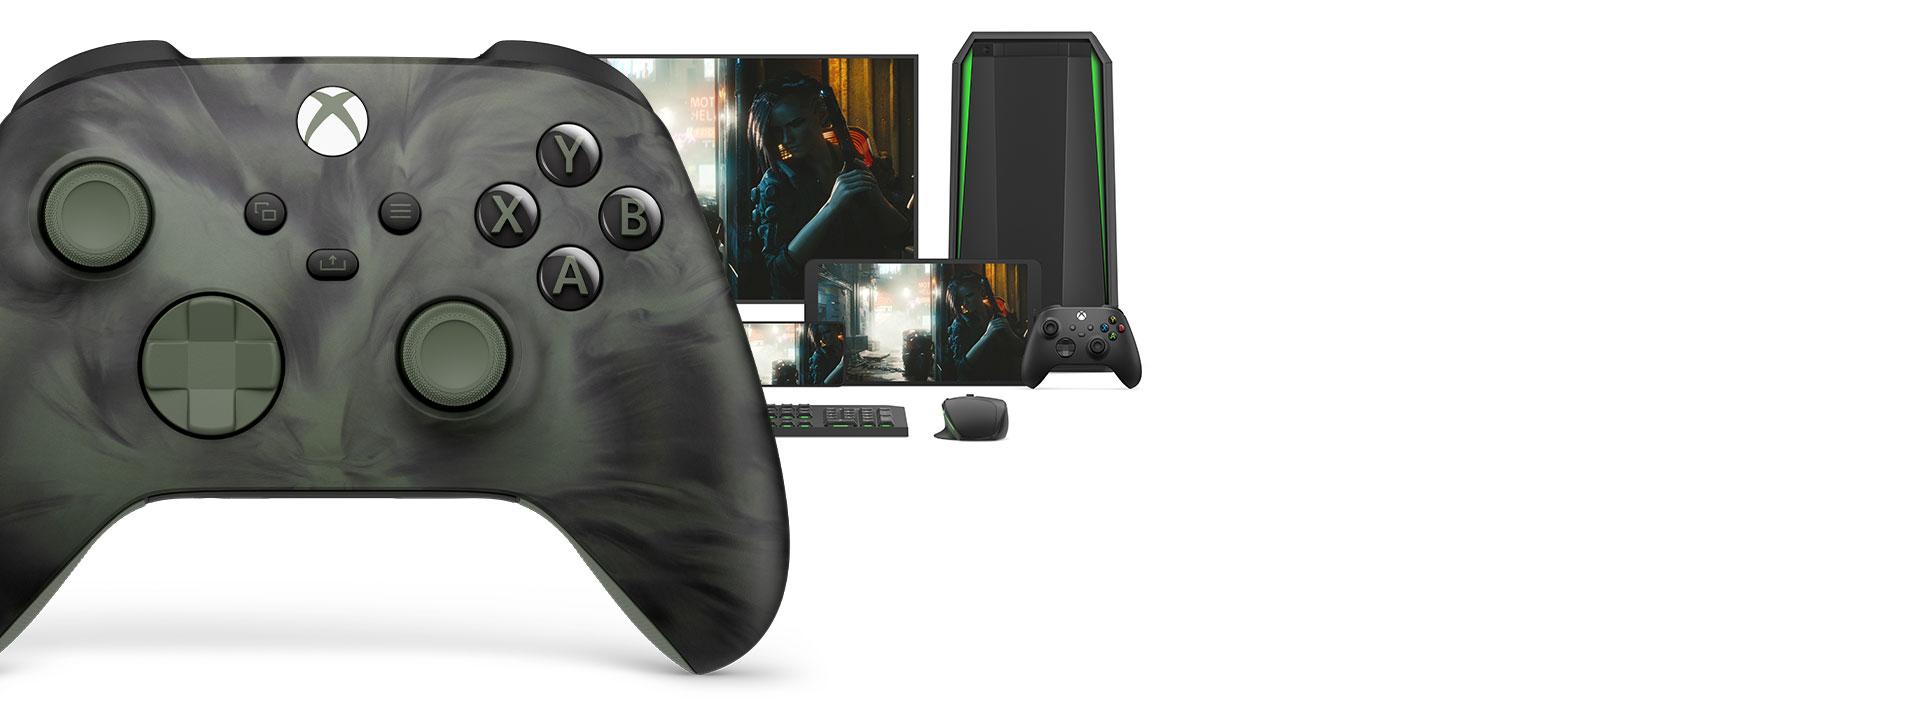 Langattoman Xbox-ohjaimen Nocturnal Vapor Special Edition -version oikea puoli ja taustalla eri pelialustoja.